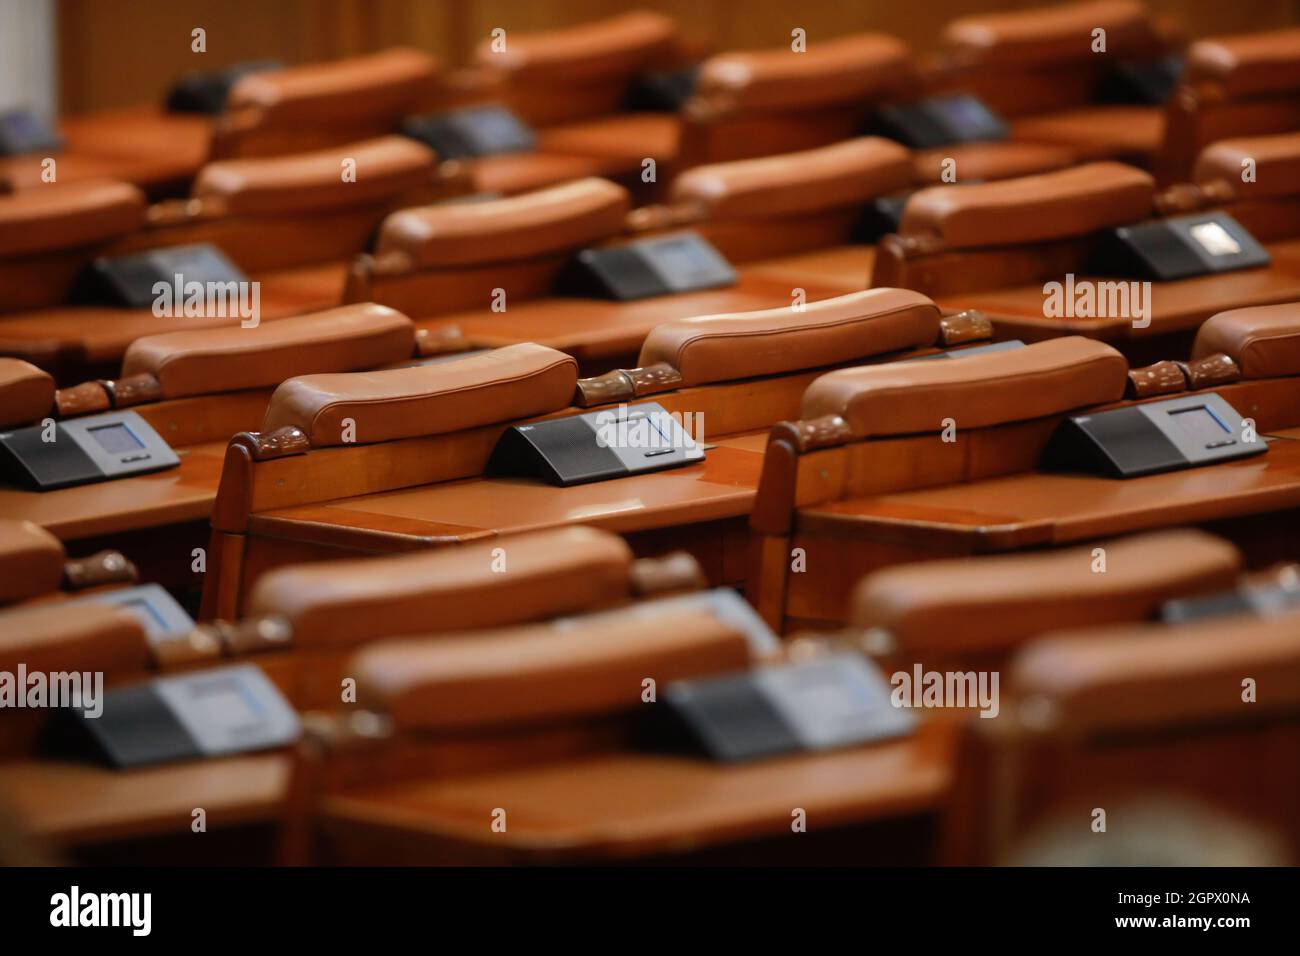 Bucarest, Romania - 30 settembre 2021: Posti a sedere vuoti nella Camera dei deputati rumena all'interno del Palazzo del Parlamento. Foto Stock